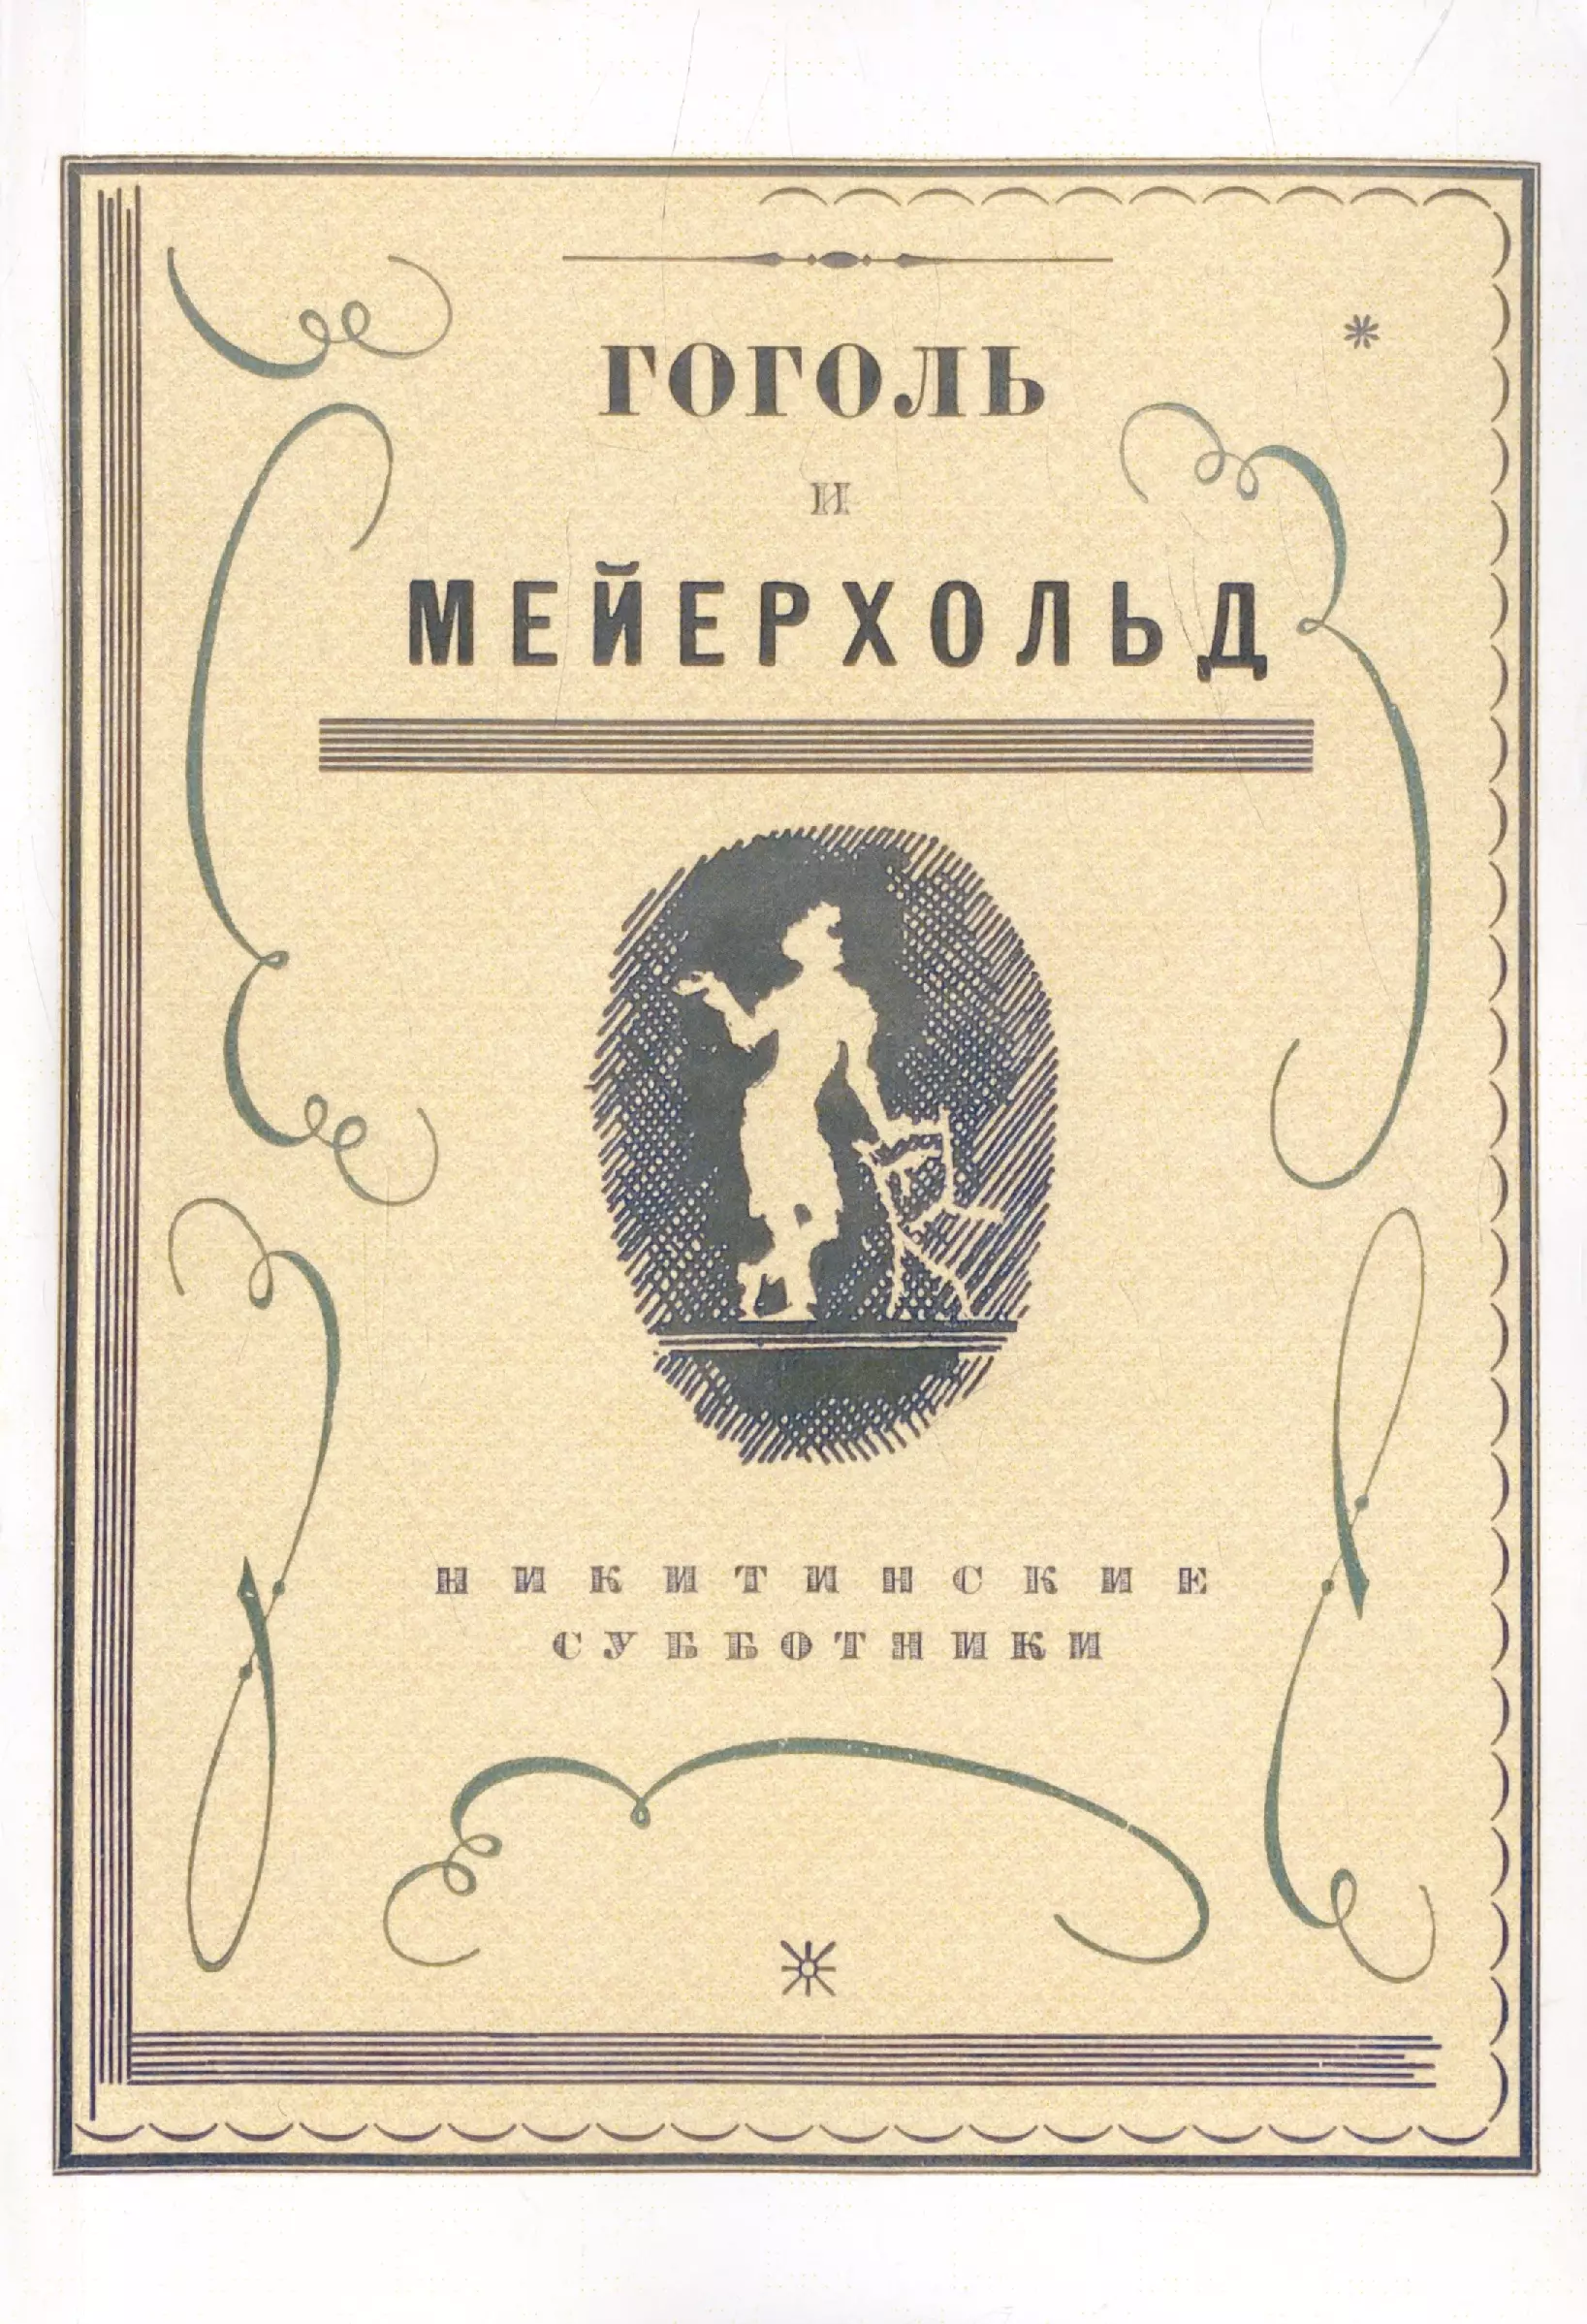 Гоголь и Мейерхольд: сборник (Репринтное издание) хорт а смехачи мейерхольда